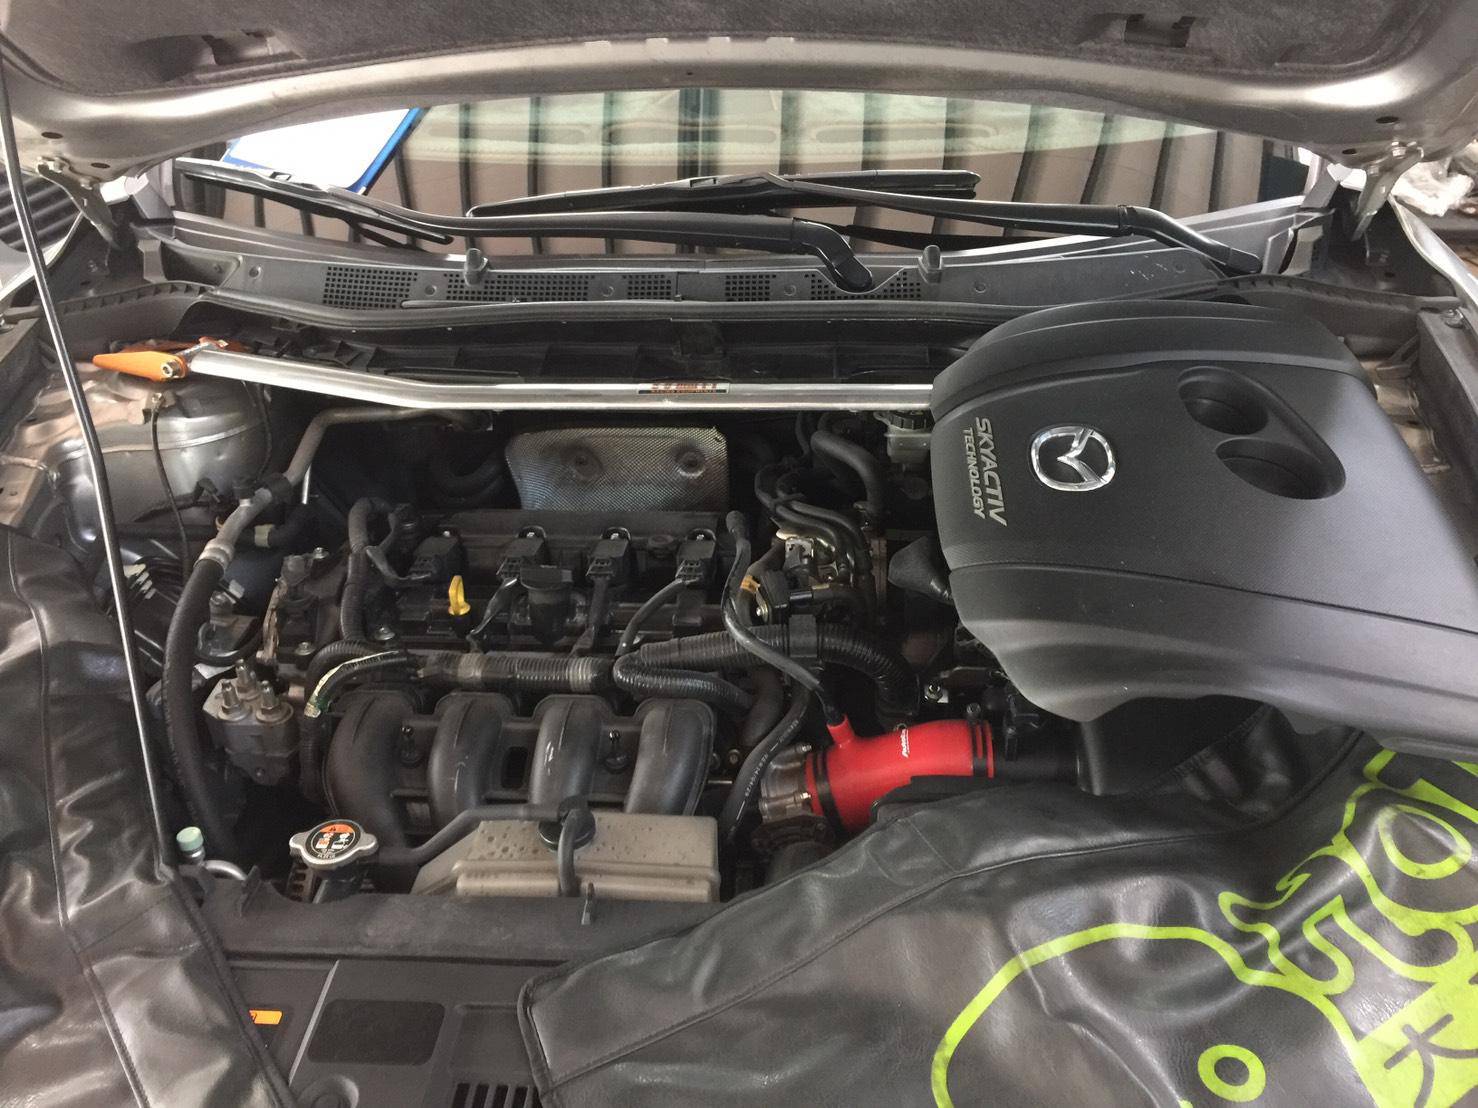 塞特汽車 馬自達 Mazda Cx5 引擎故障燈亮 儀表故障燈亮 觸媒問題 引擎排氣 Oicar推薦汽車保修鈑烤預約保障車廠 引擎系統維修 Oicar